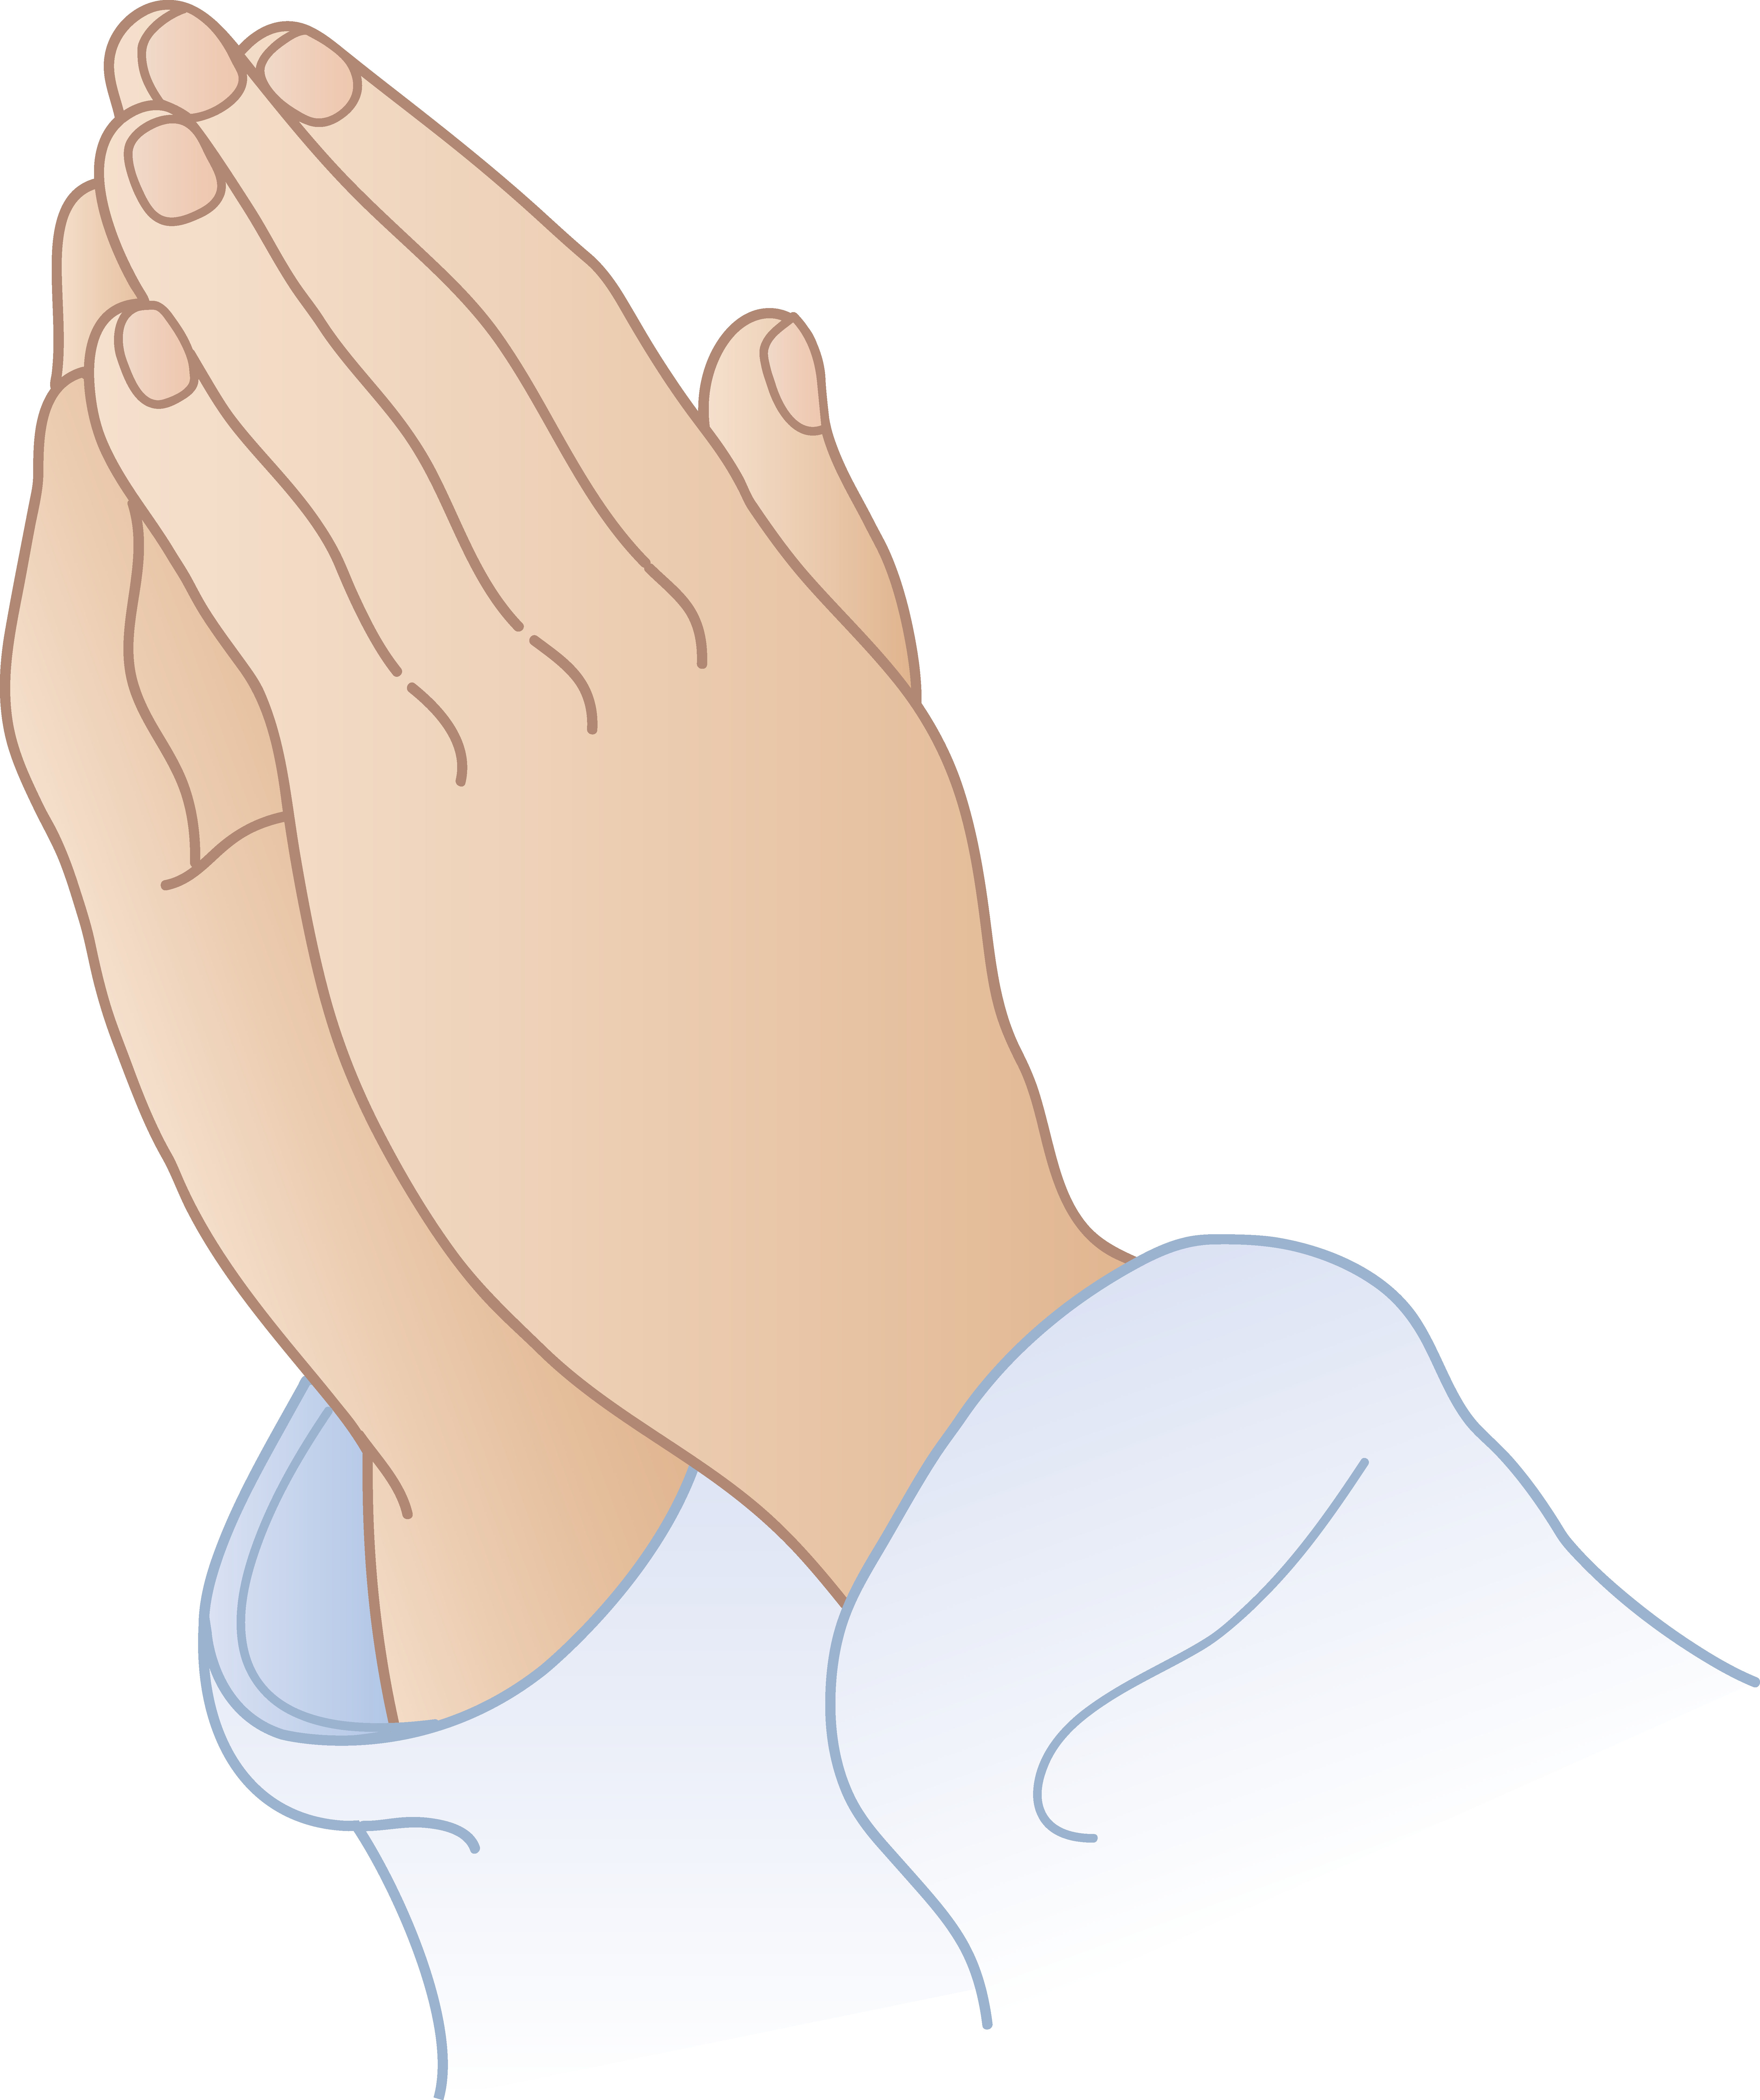 Free Praying Hands Cartoon, Download Free Clip Art, Free